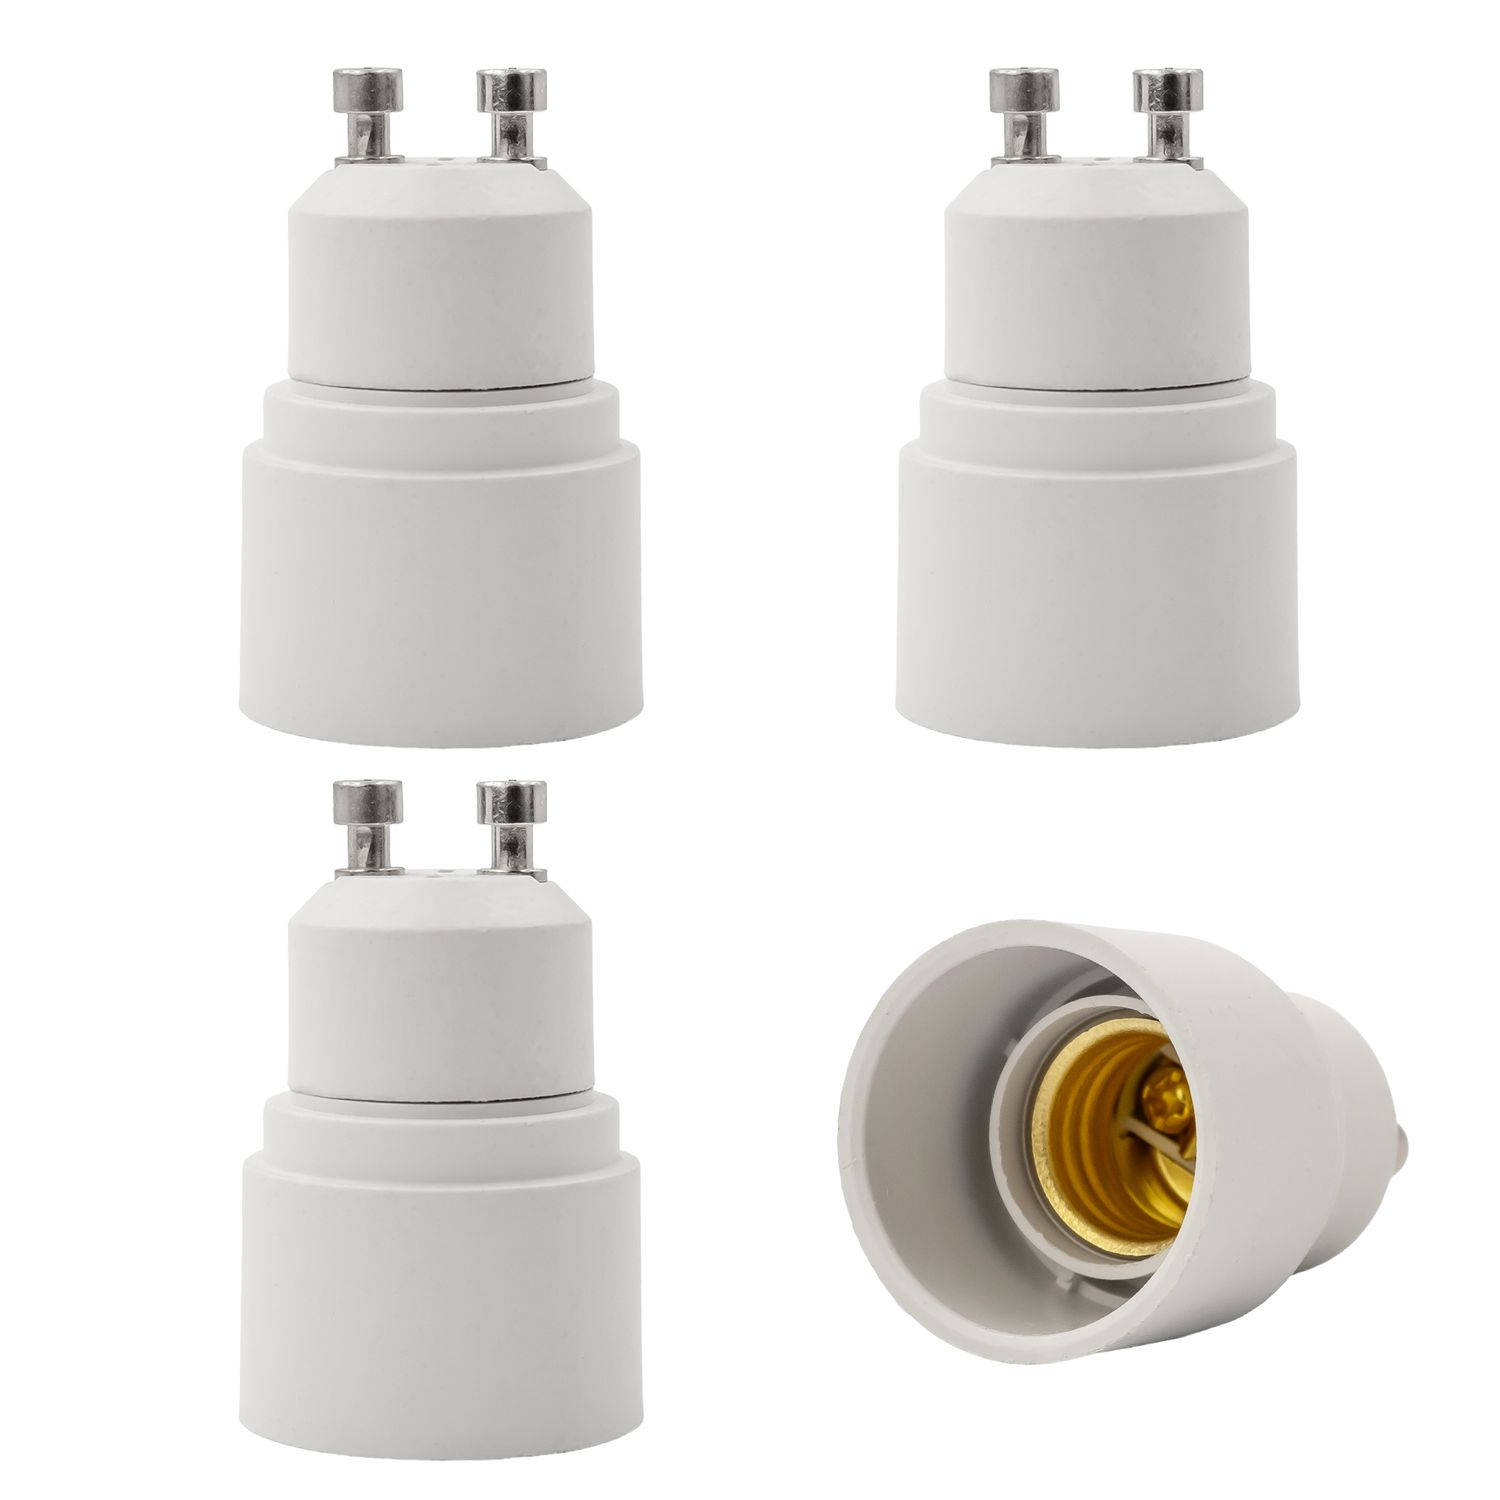 INTIRILIFE GU10 naar E14 lampvoet adapter in wit - 4x lampadapter voor het omvormen van GU10 naar E14-set van 4 converter voor lamphouder voor gloeilampen, led, halogeen, spaarlamp